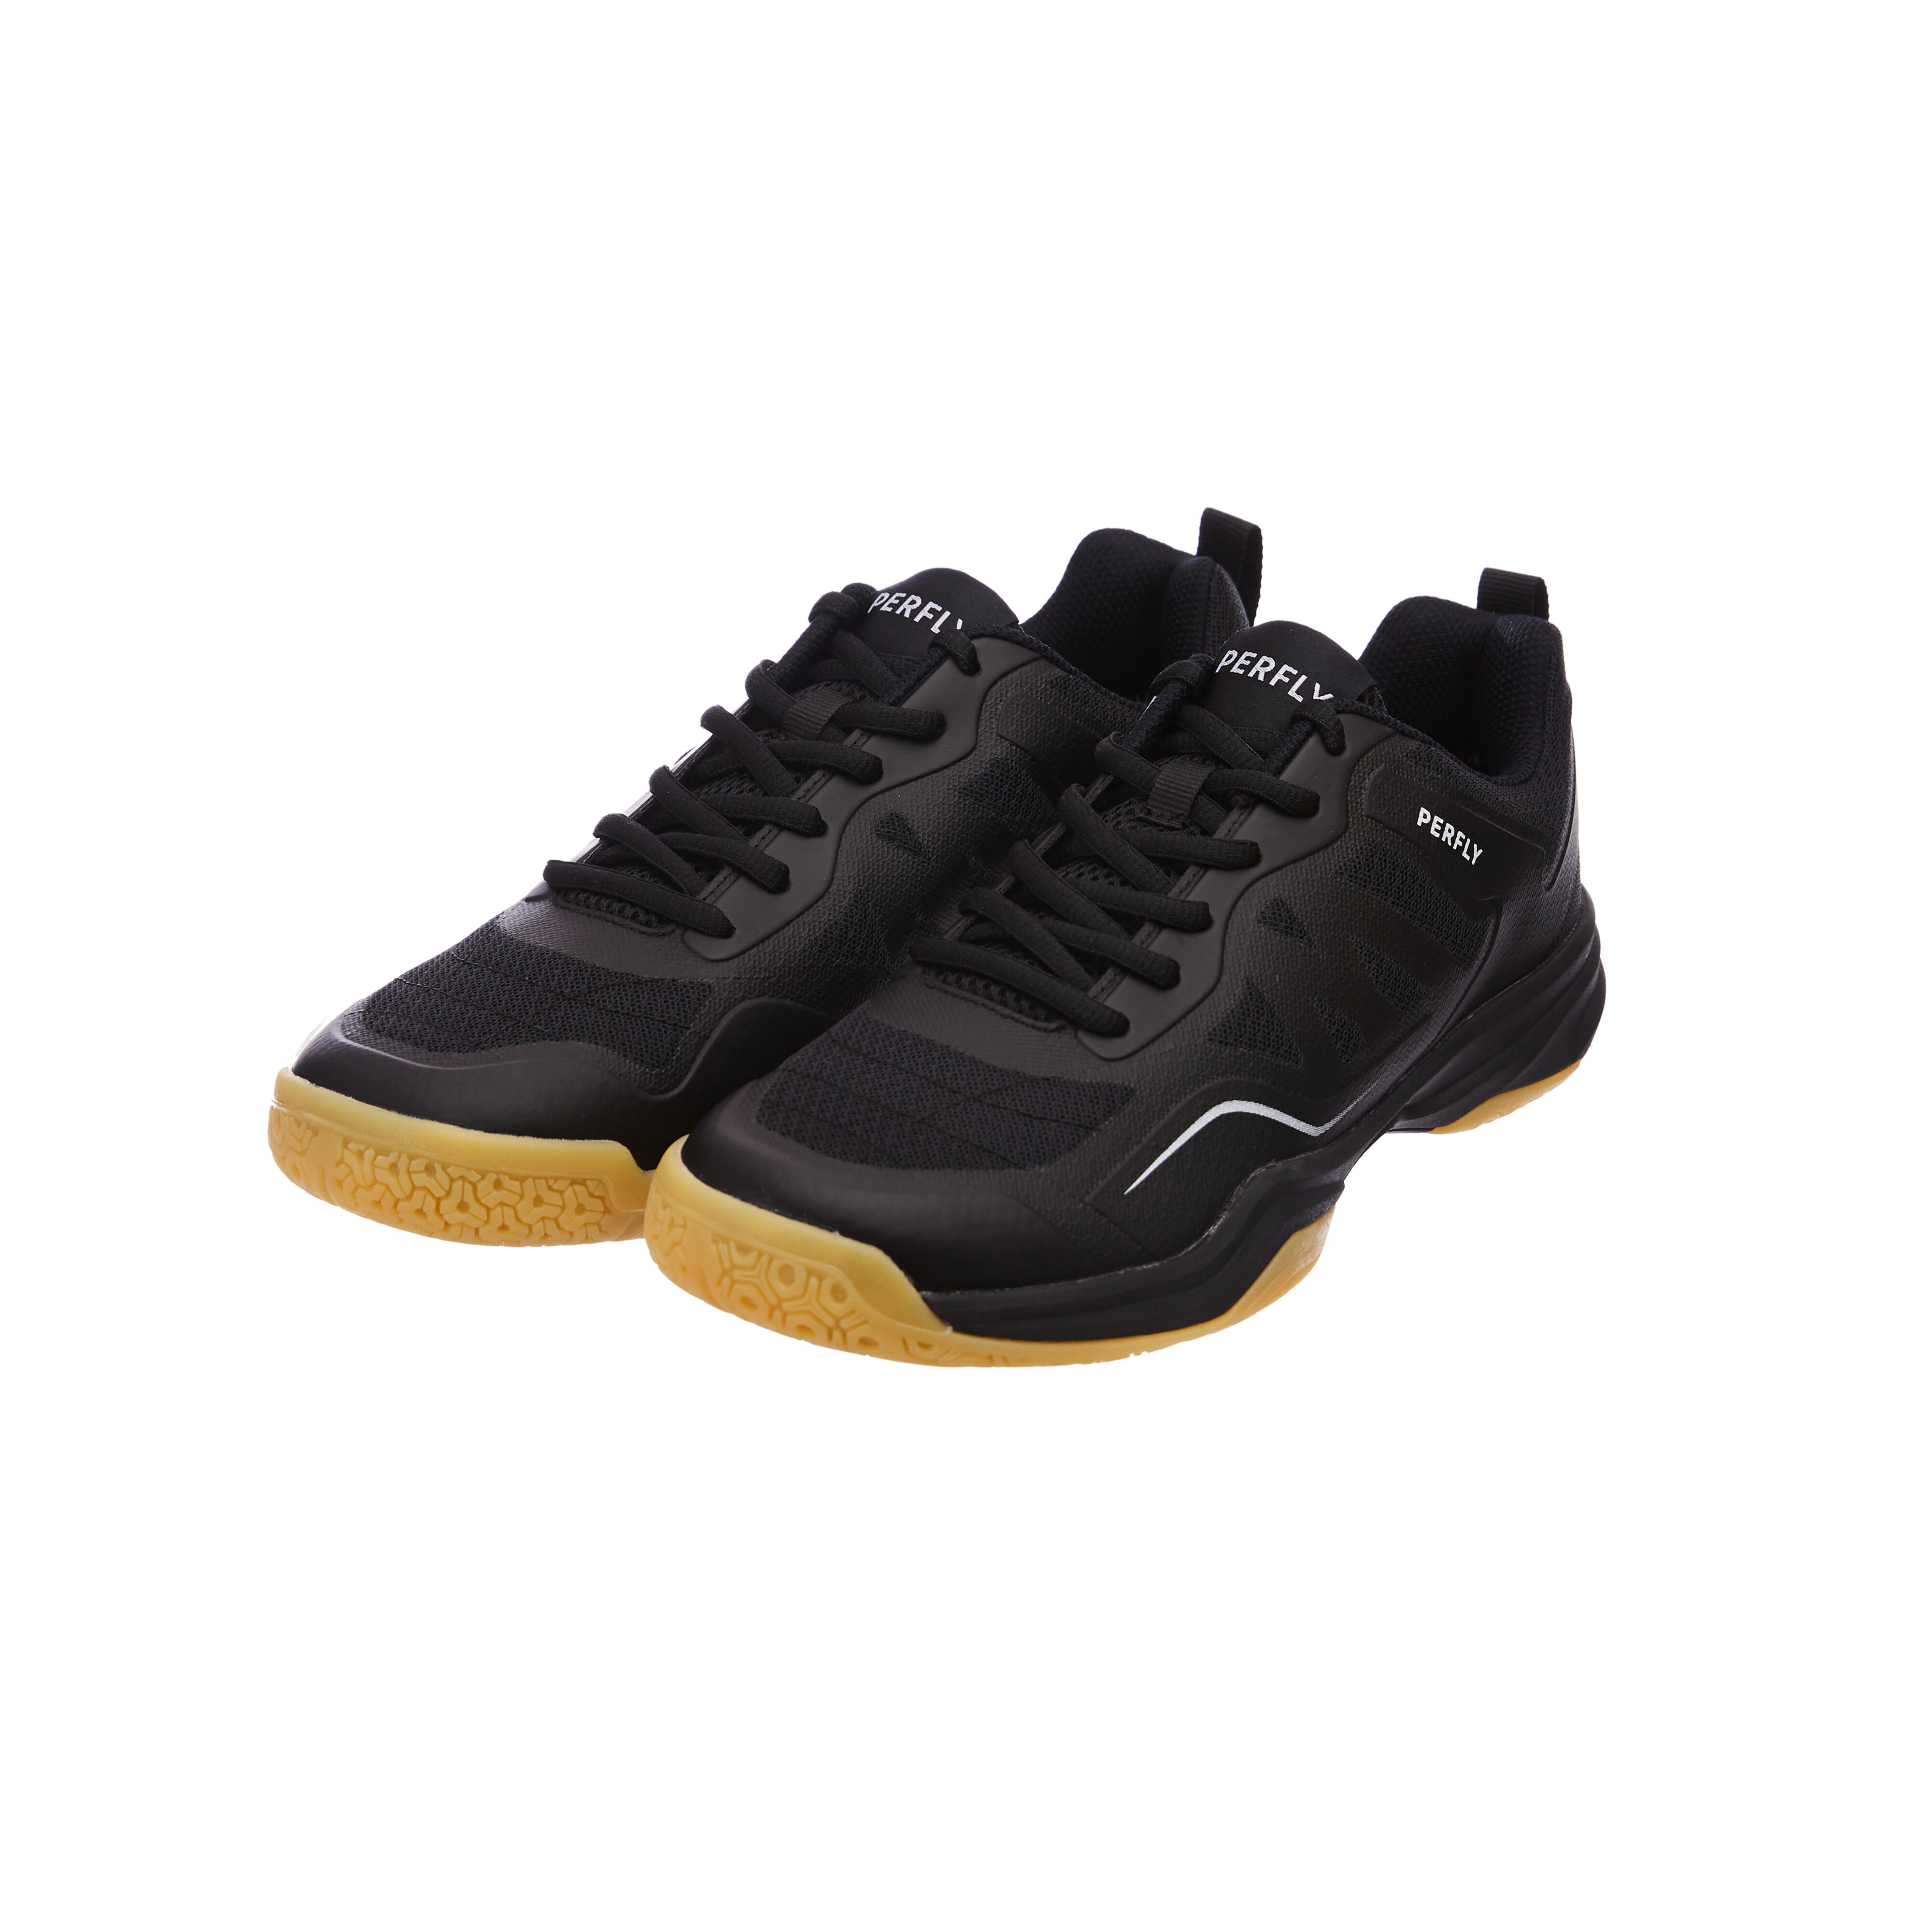 Buy Men Badminton Shoes BS 530 Navy Online | Decathlon